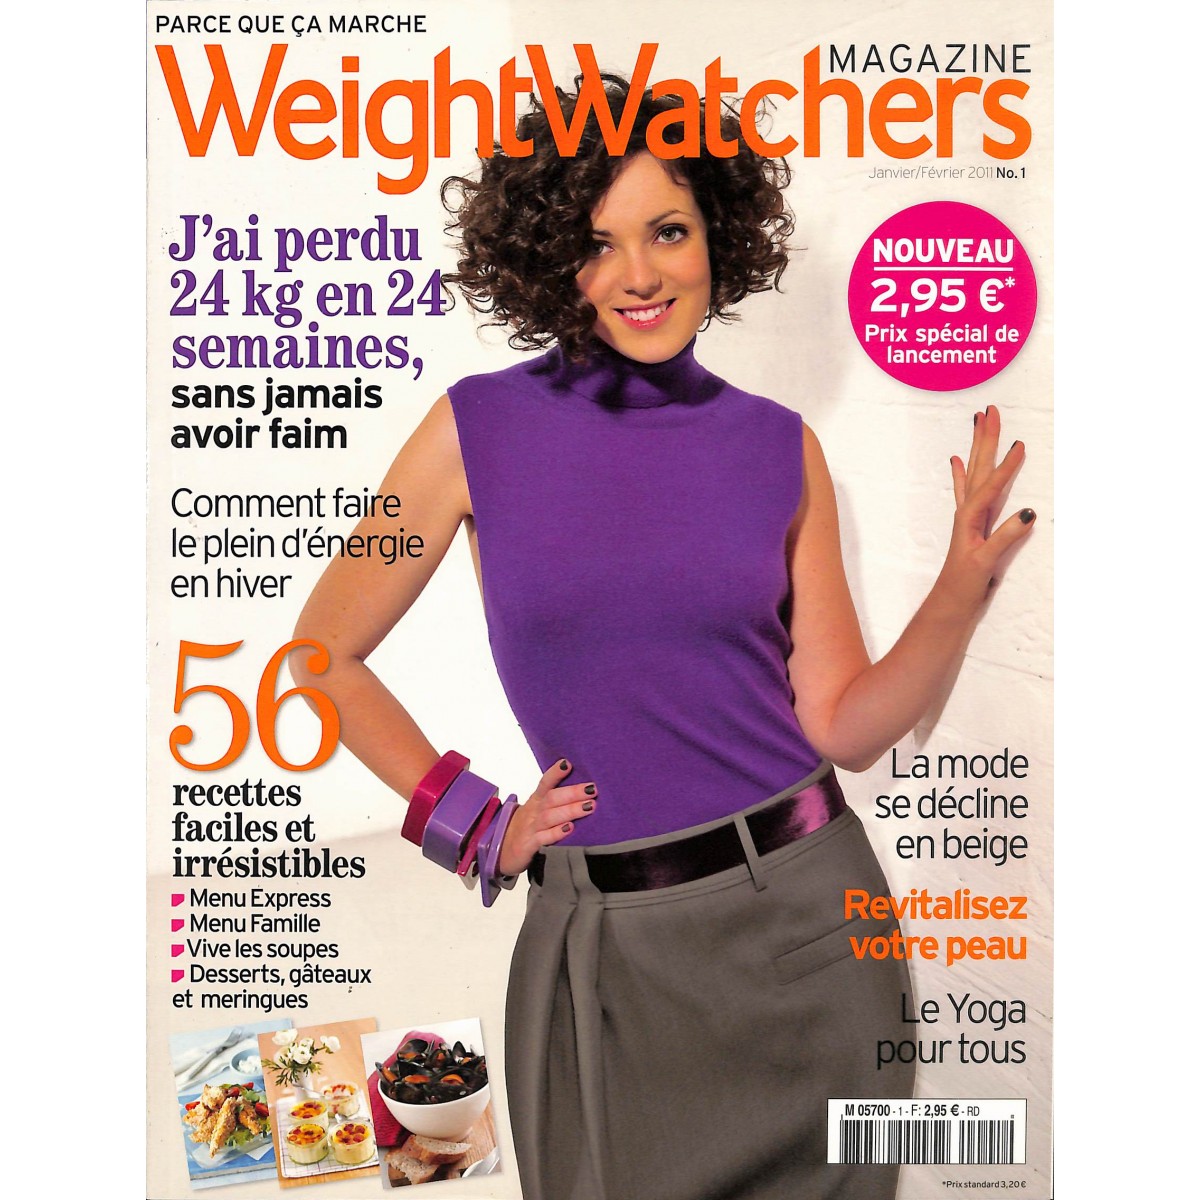 Tout ce qu'il faut savoir sur le programme weight watchers - Orion Magazine